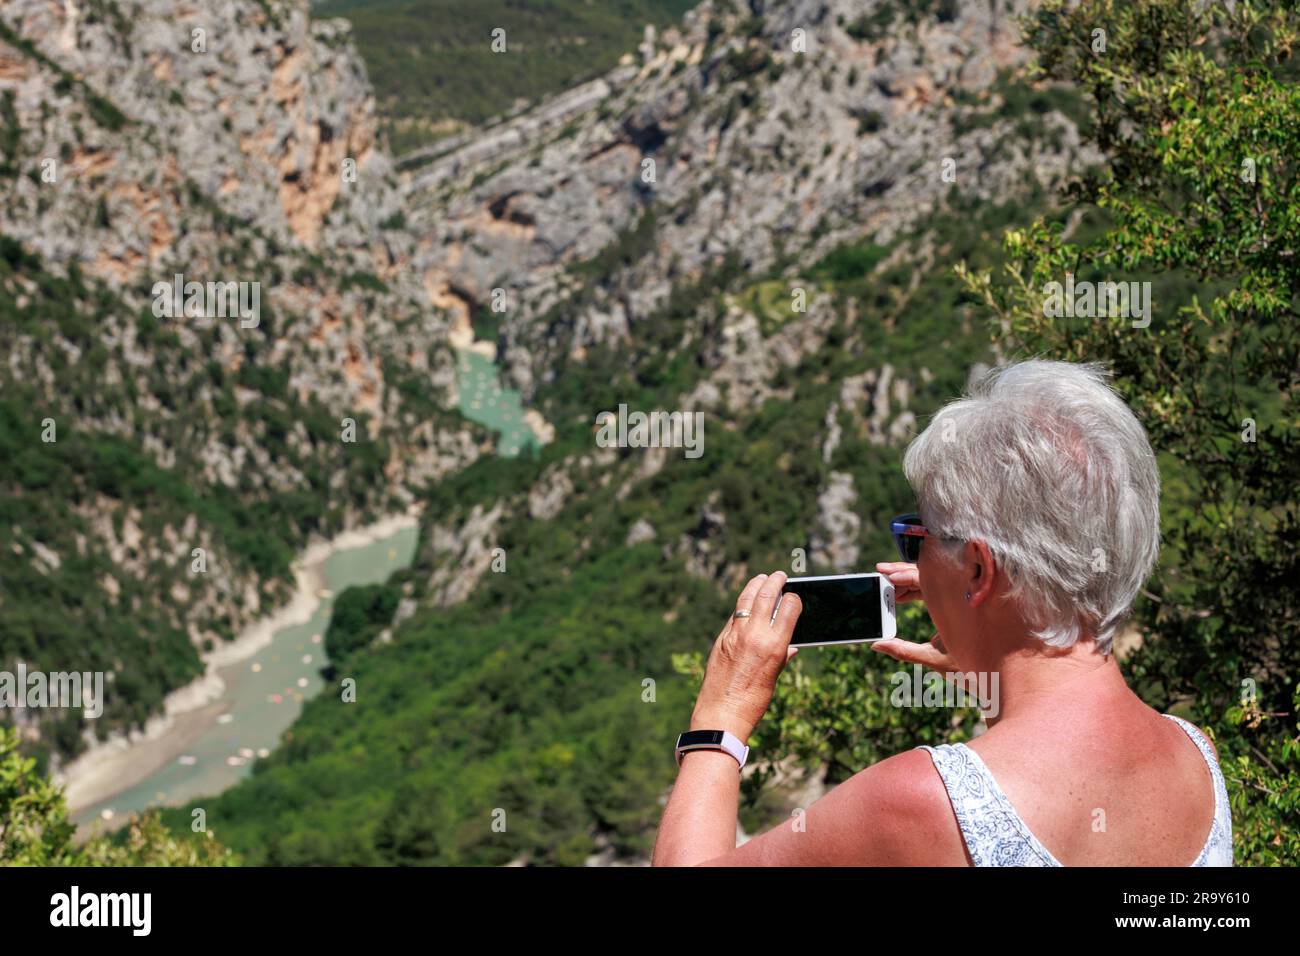 A view of the Verdon Gorge Var Alpes-de-Haute-Provence Provence-Alpes-Cote d'Azur France Stock Photo